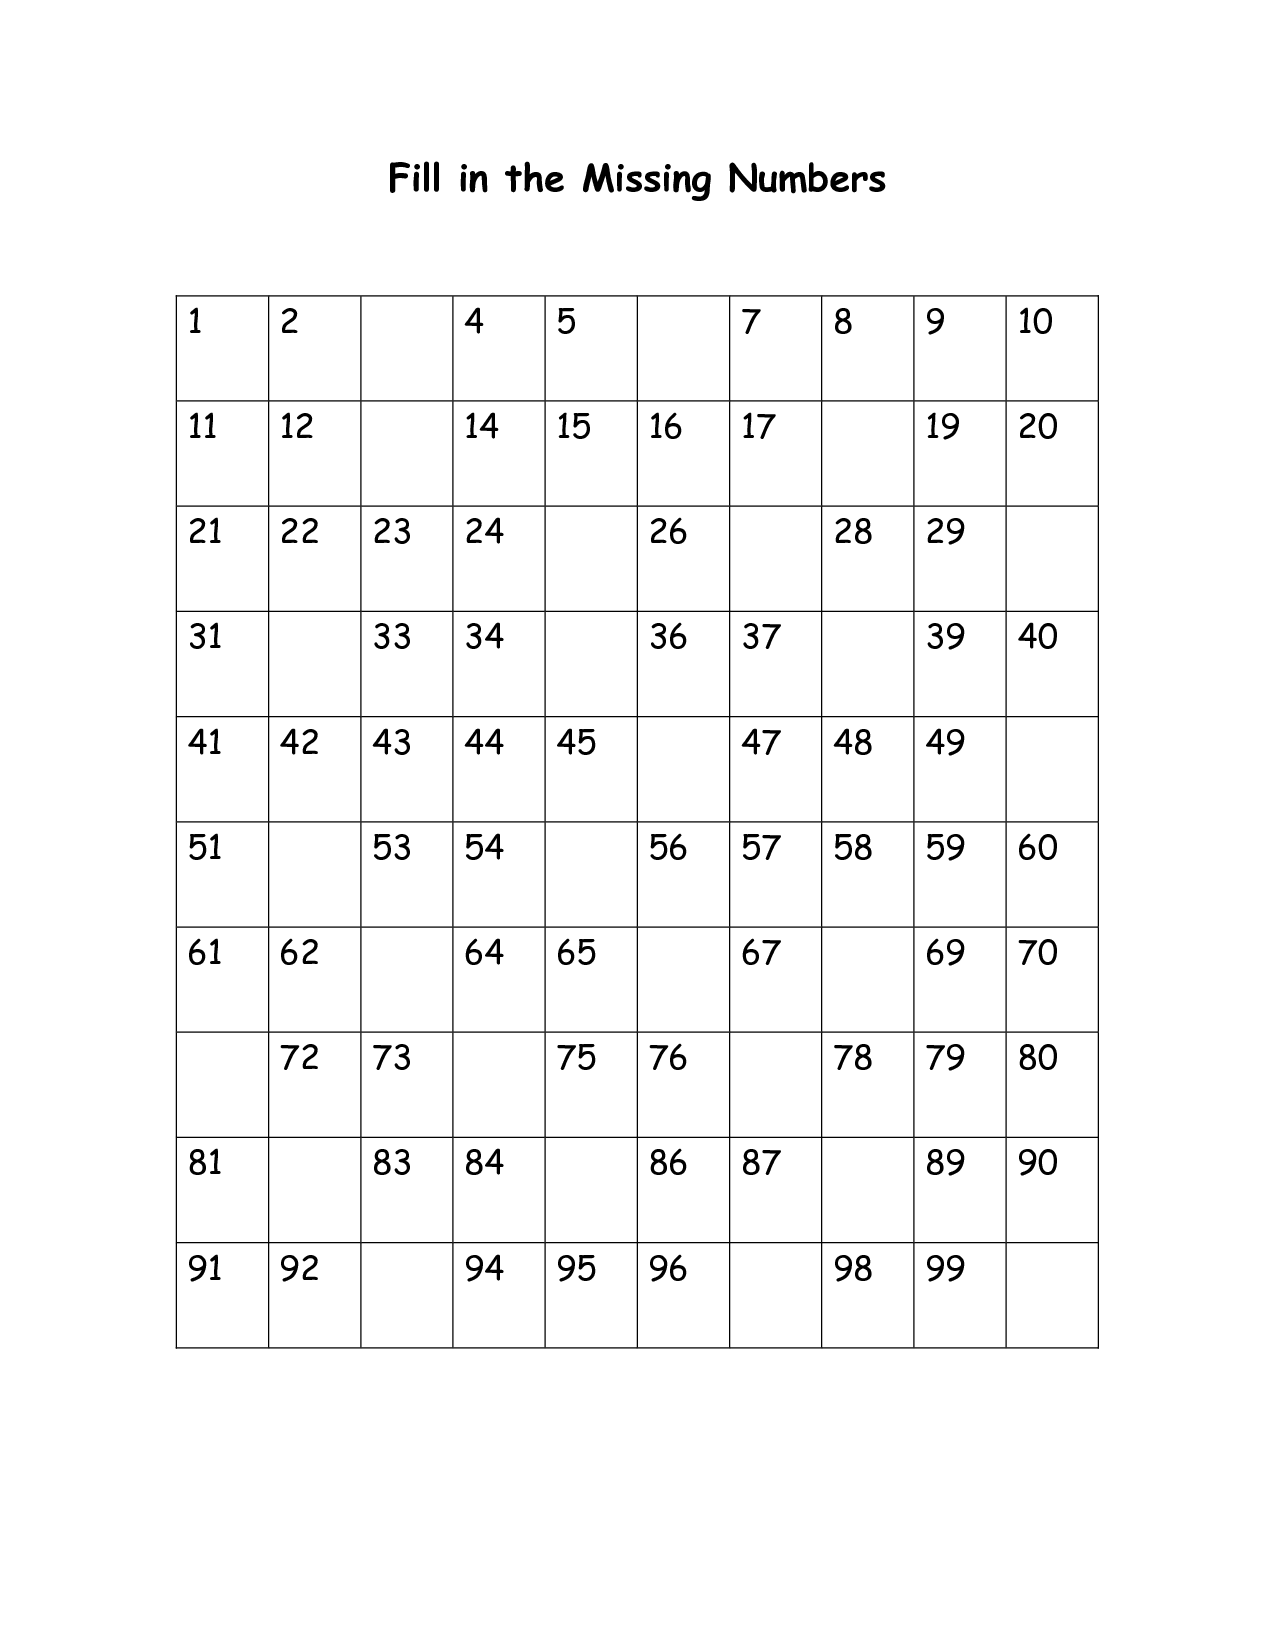 Fill Missing Number Worksheets Image